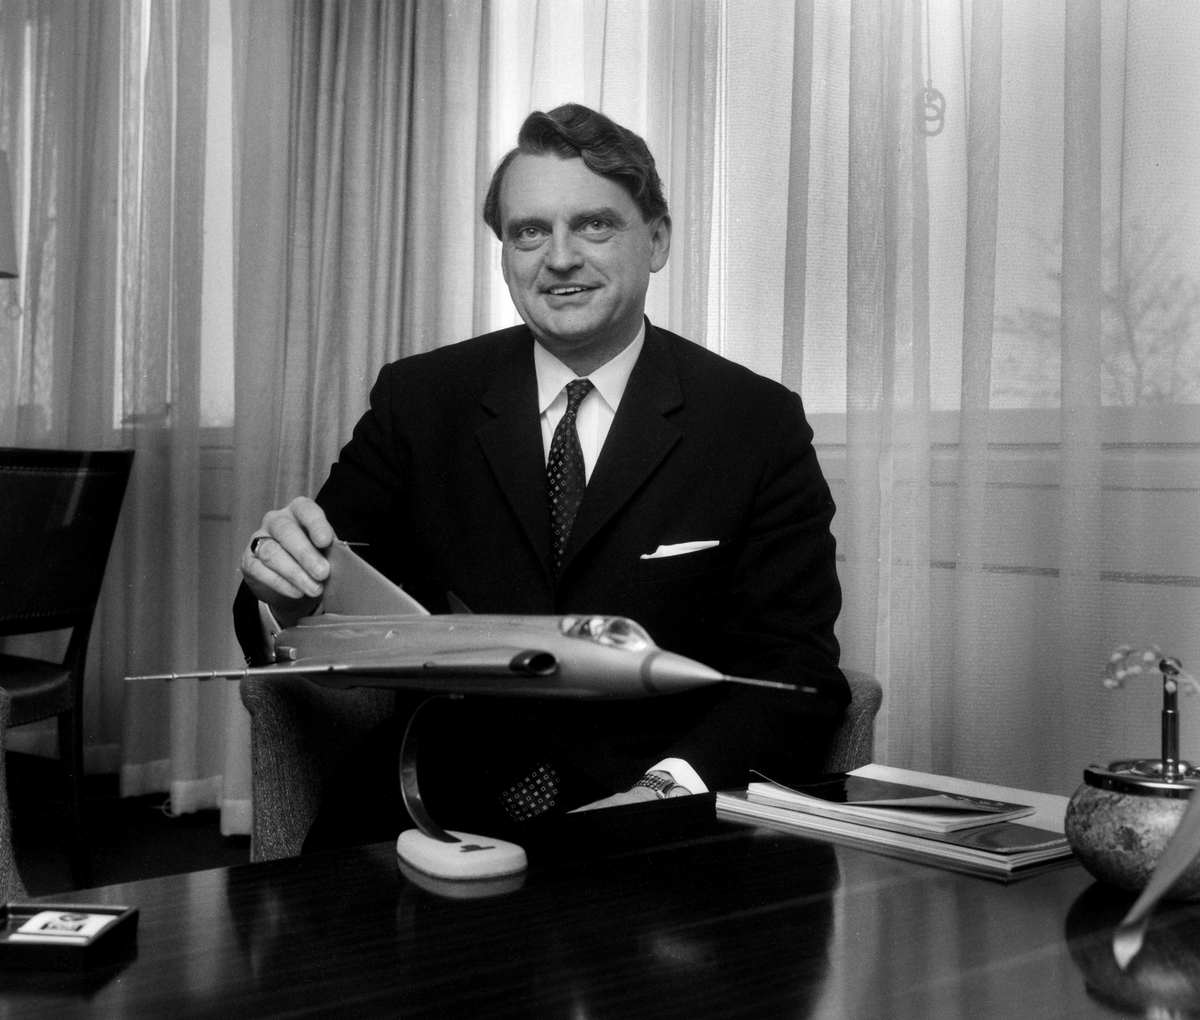 Curt Mileikowsky, född 1 maj 1923 i Stockholm, död 24 juni 2005, var en svensk ingenjör, forskare och företagsledare inom Asea och Saab-Scania. 1968 rekryterades Mileikowsky som VD för Saab AB och slutade 1978.